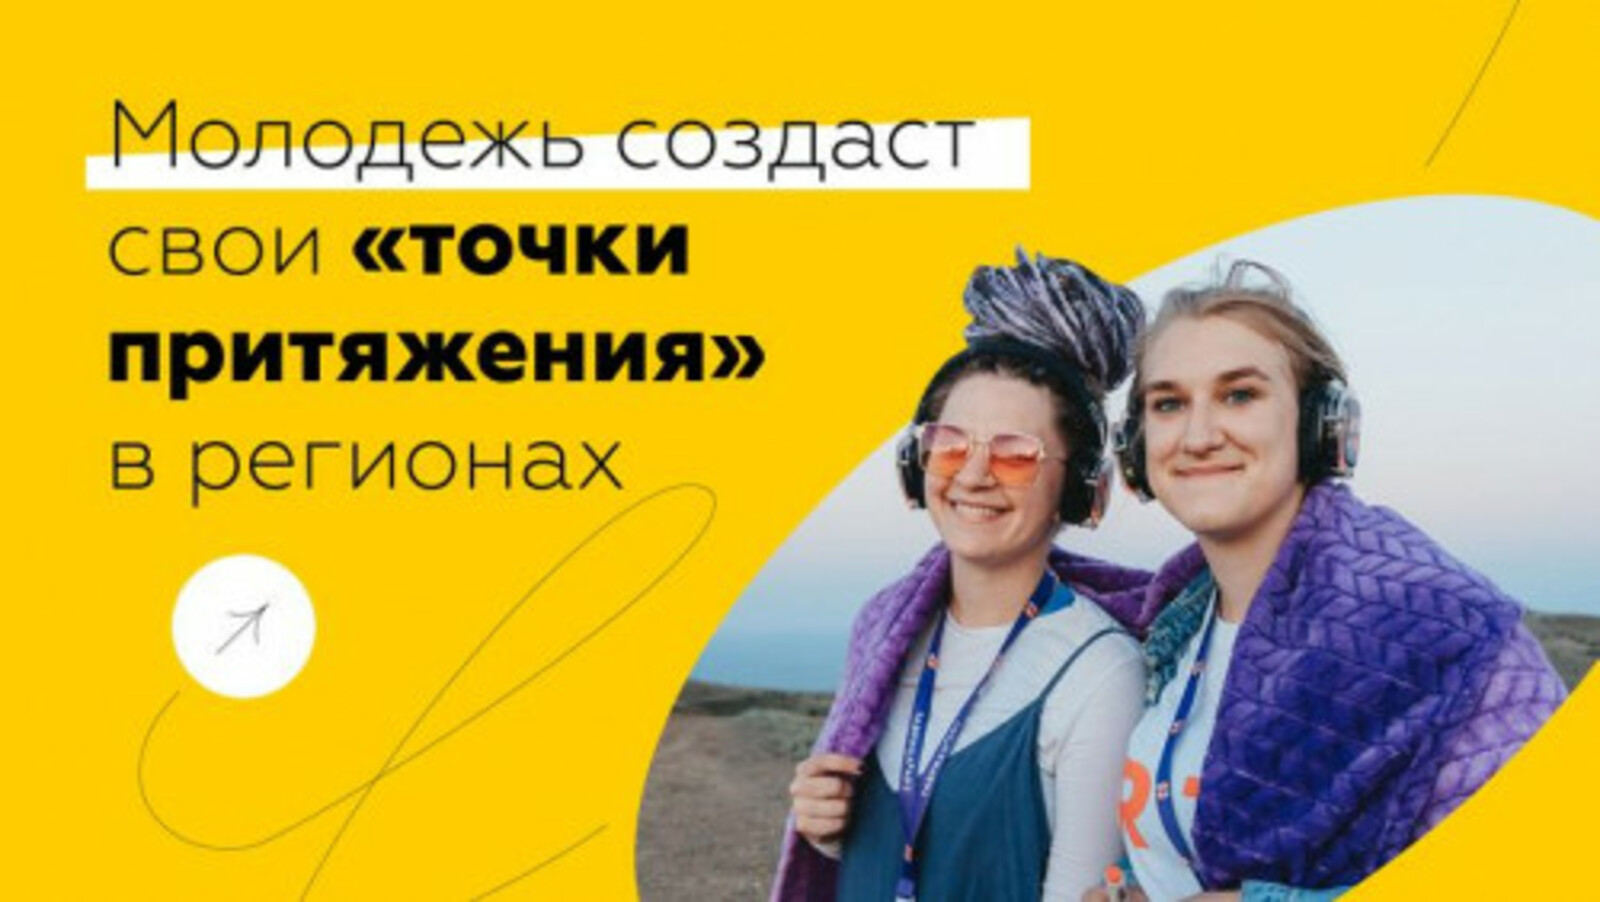 Двадцать три  пространства Башкирии участвуют в голосовании «Точки притяжения» молодежи